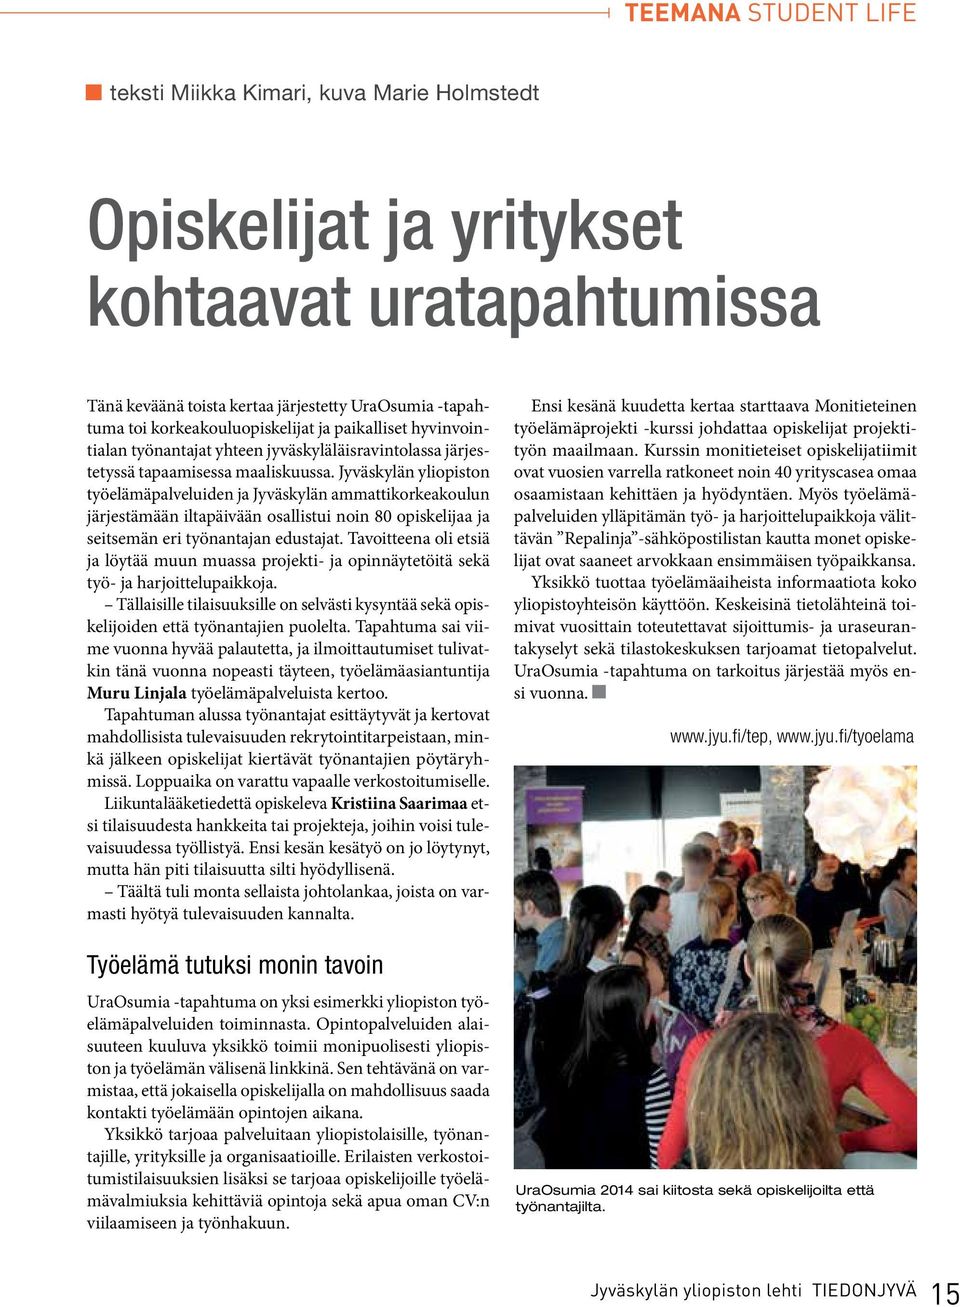 Jyväskylän yliopiston työelämäpalveluiden ja Jyväskylän ammattikorkeakoulun järjestämään iltapäivään osallistui noin 80 opiskelijaa ja seitsemän eri työnantajan edustajat.